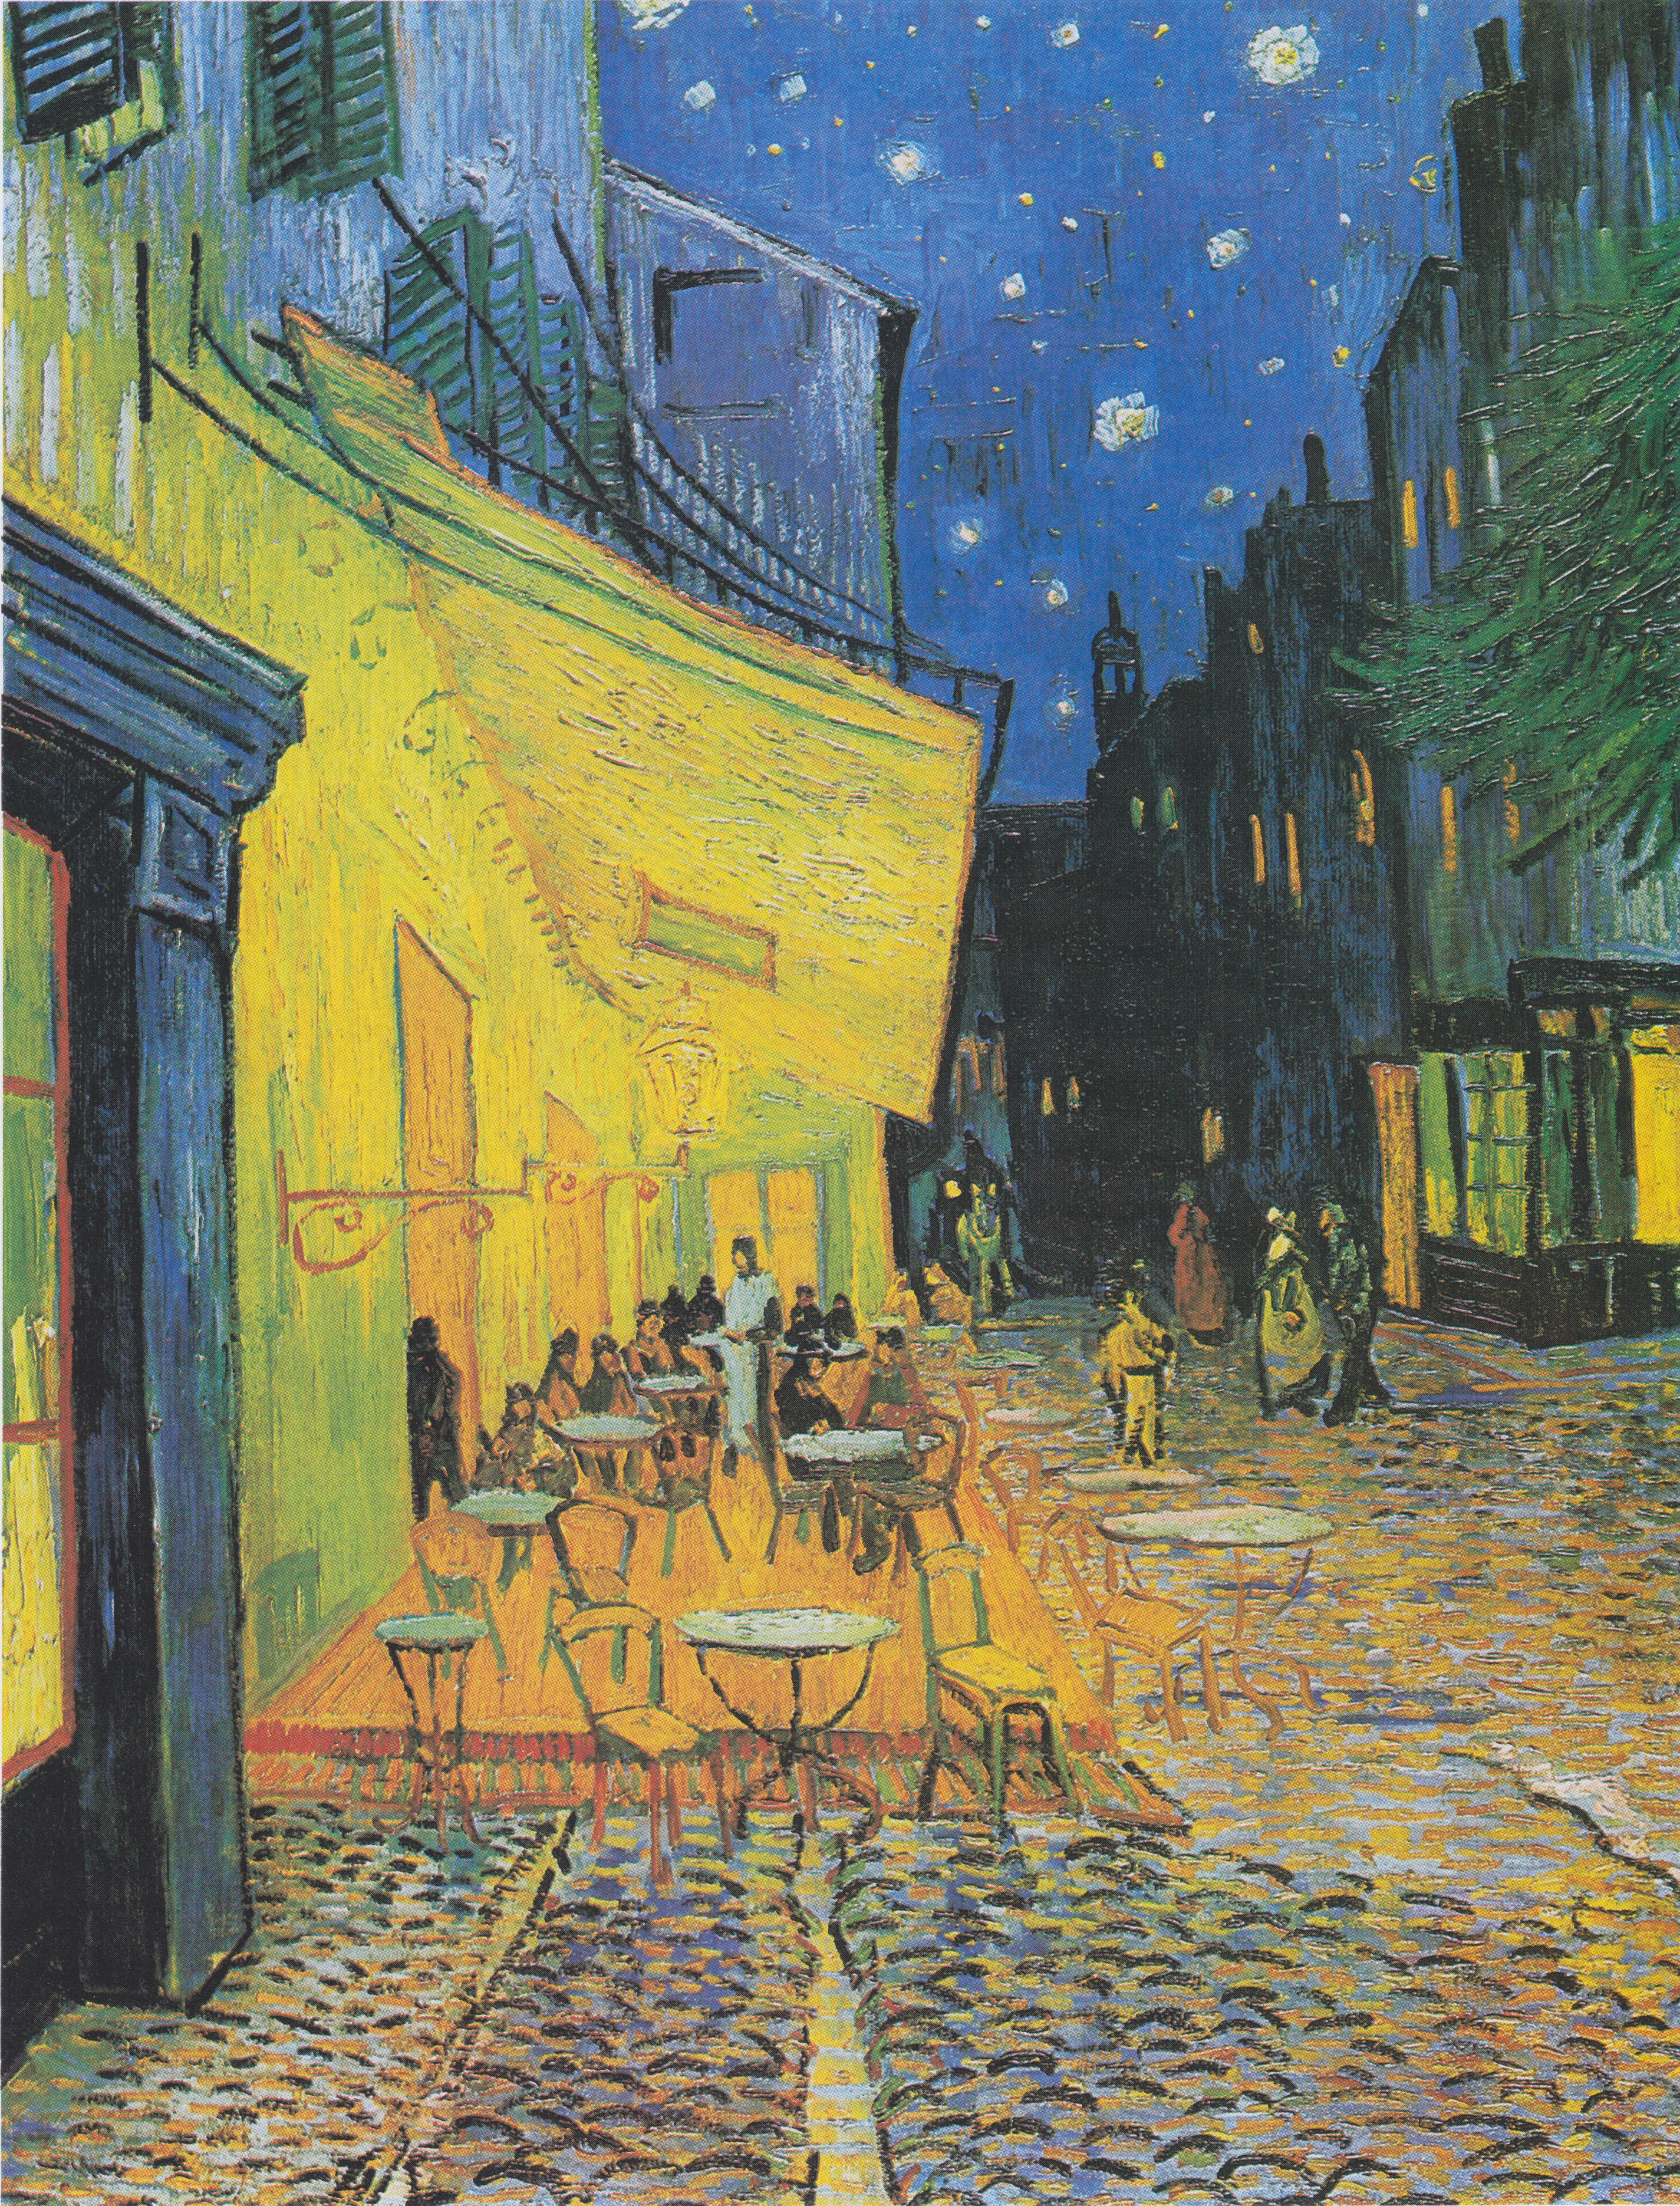 夜のカフェテラス - Wikipedia